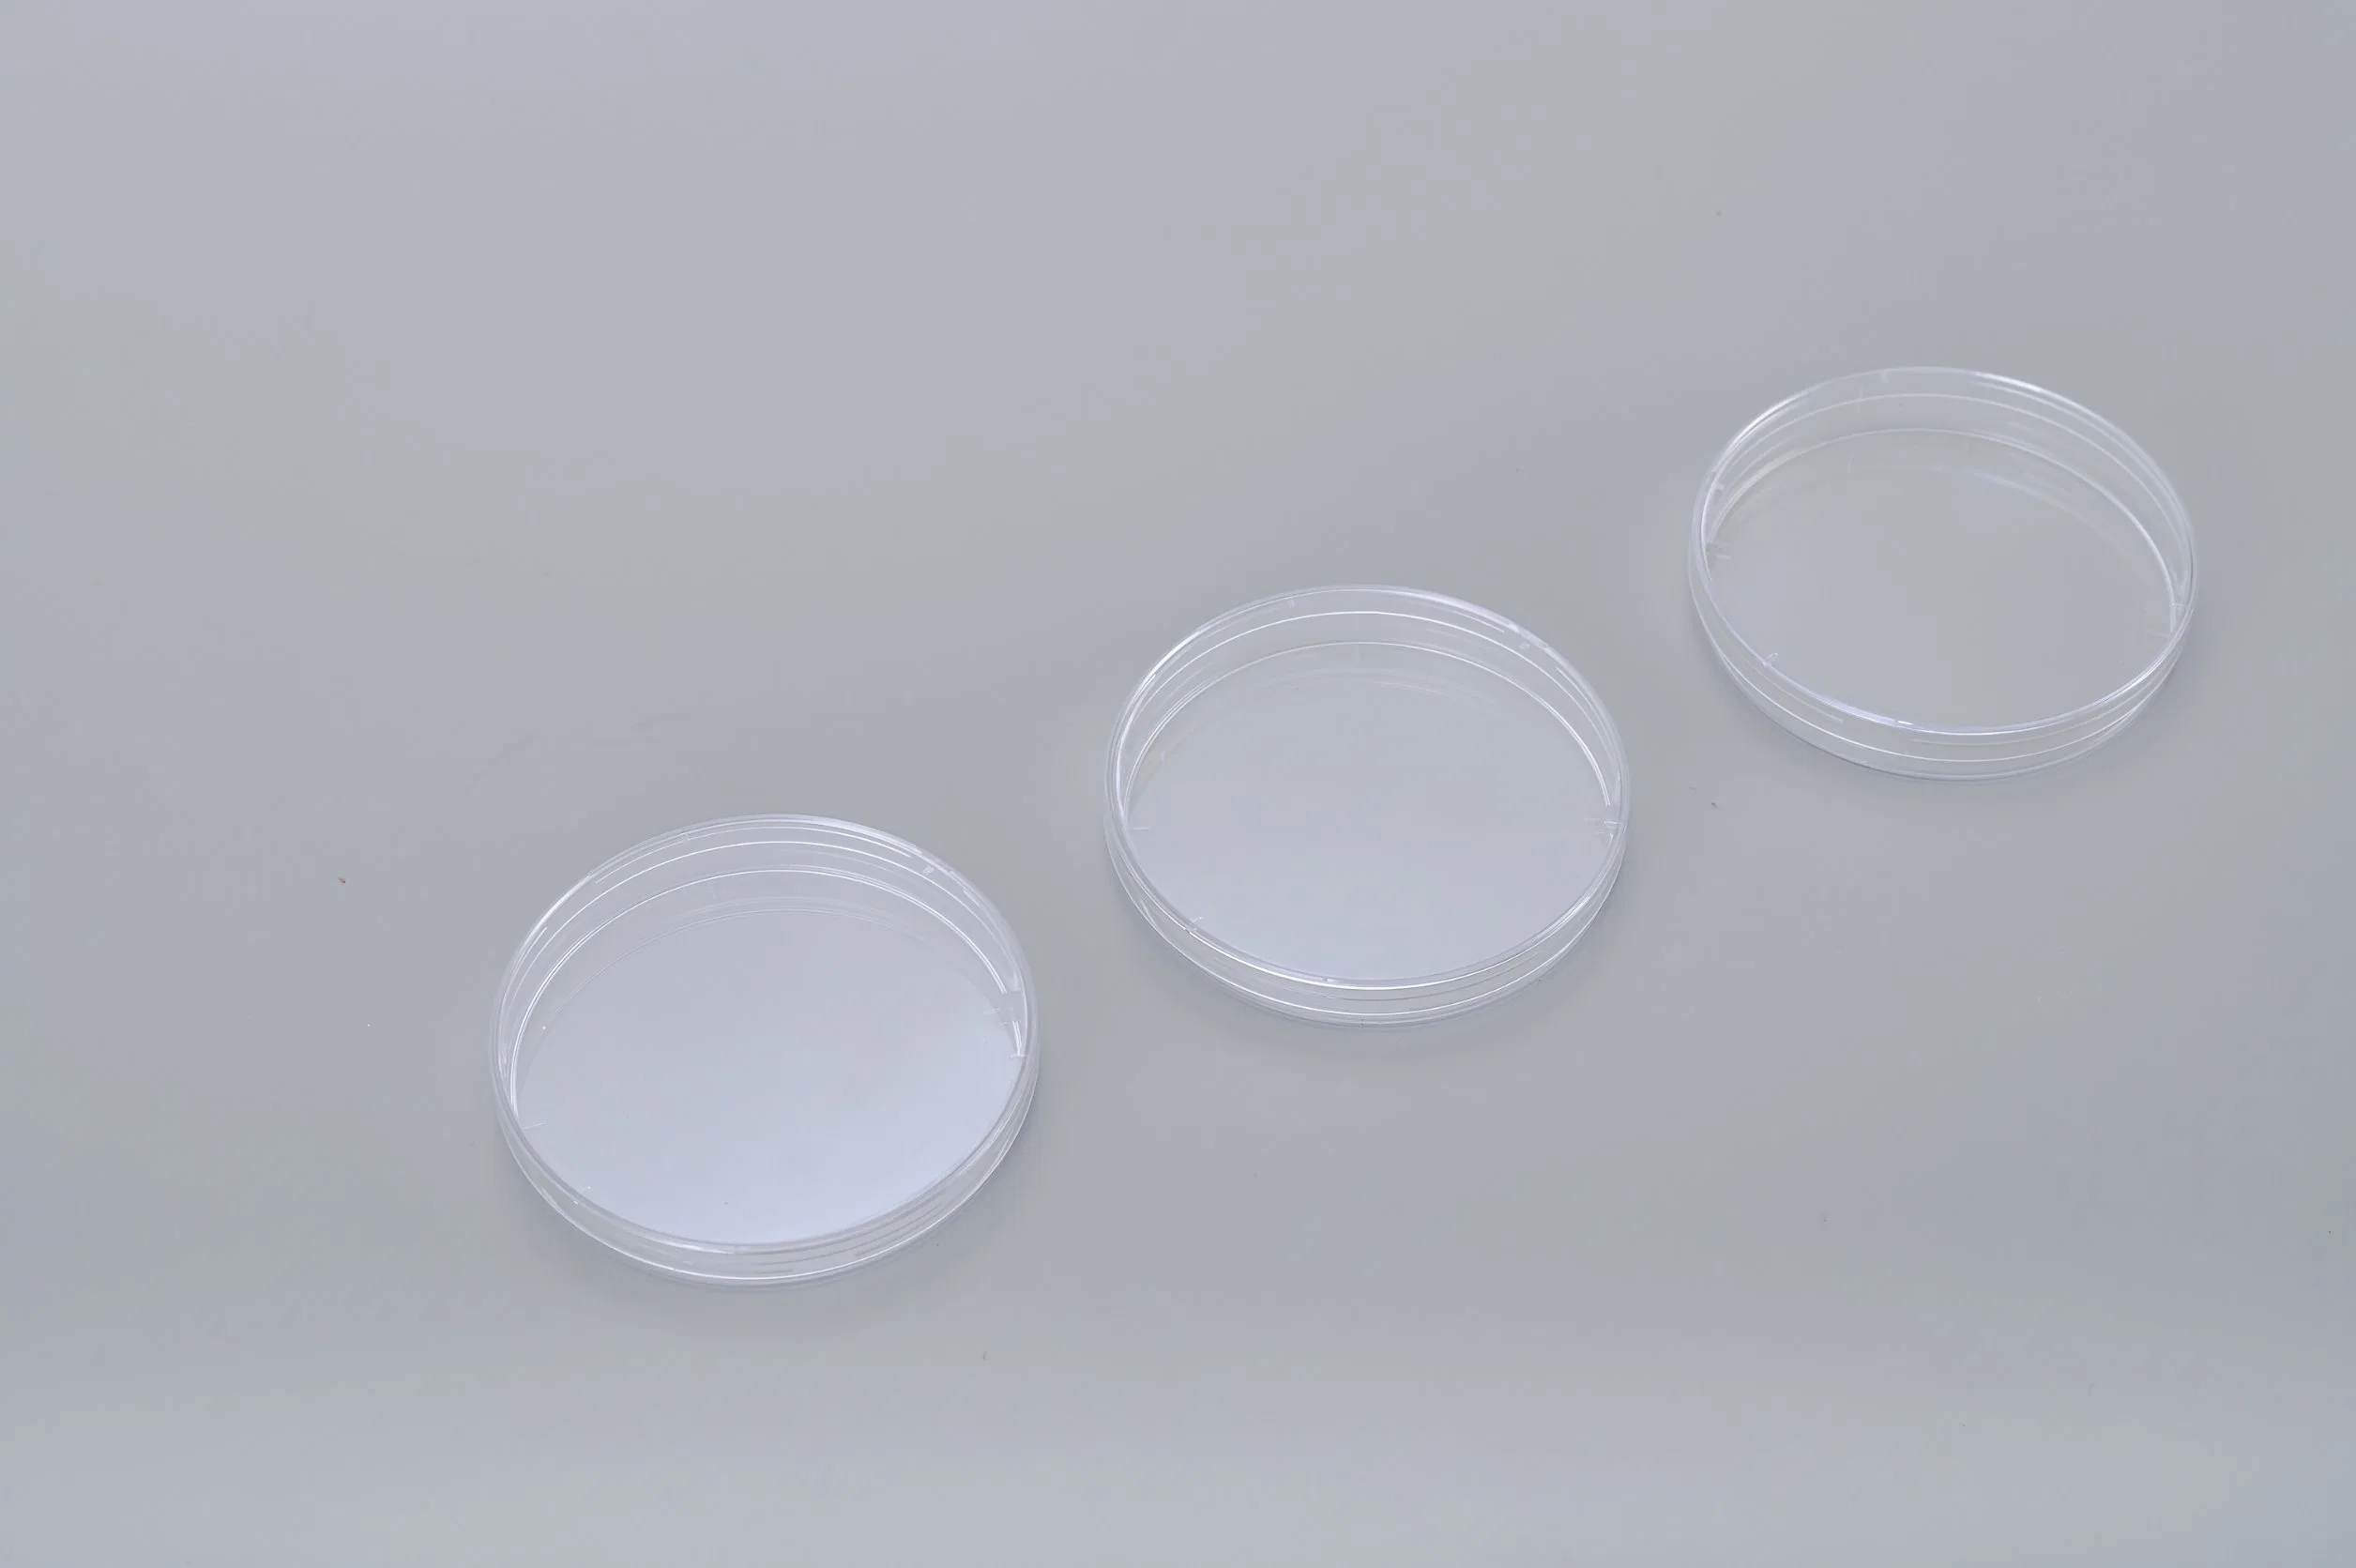 Laboratory 90 * 15mm Plastic Disposable Sterile Bacterial Tissue Culture Petri Dish, Sterile Container for Petri Dish